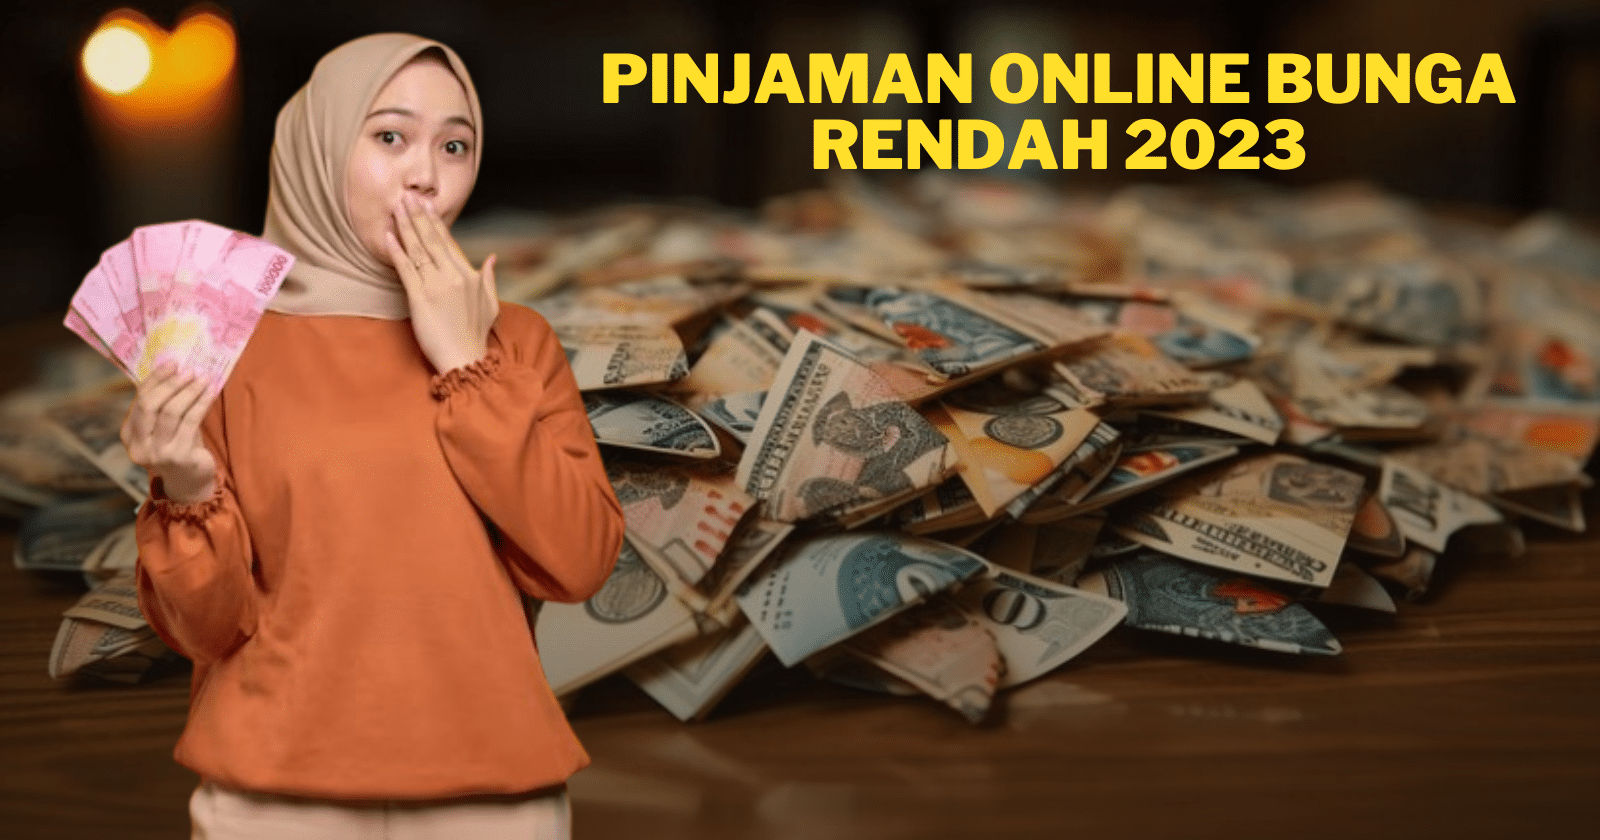 Pinjaman Online Bunga Rendah 2023 OJK Tenor Panjang Langsung Cair